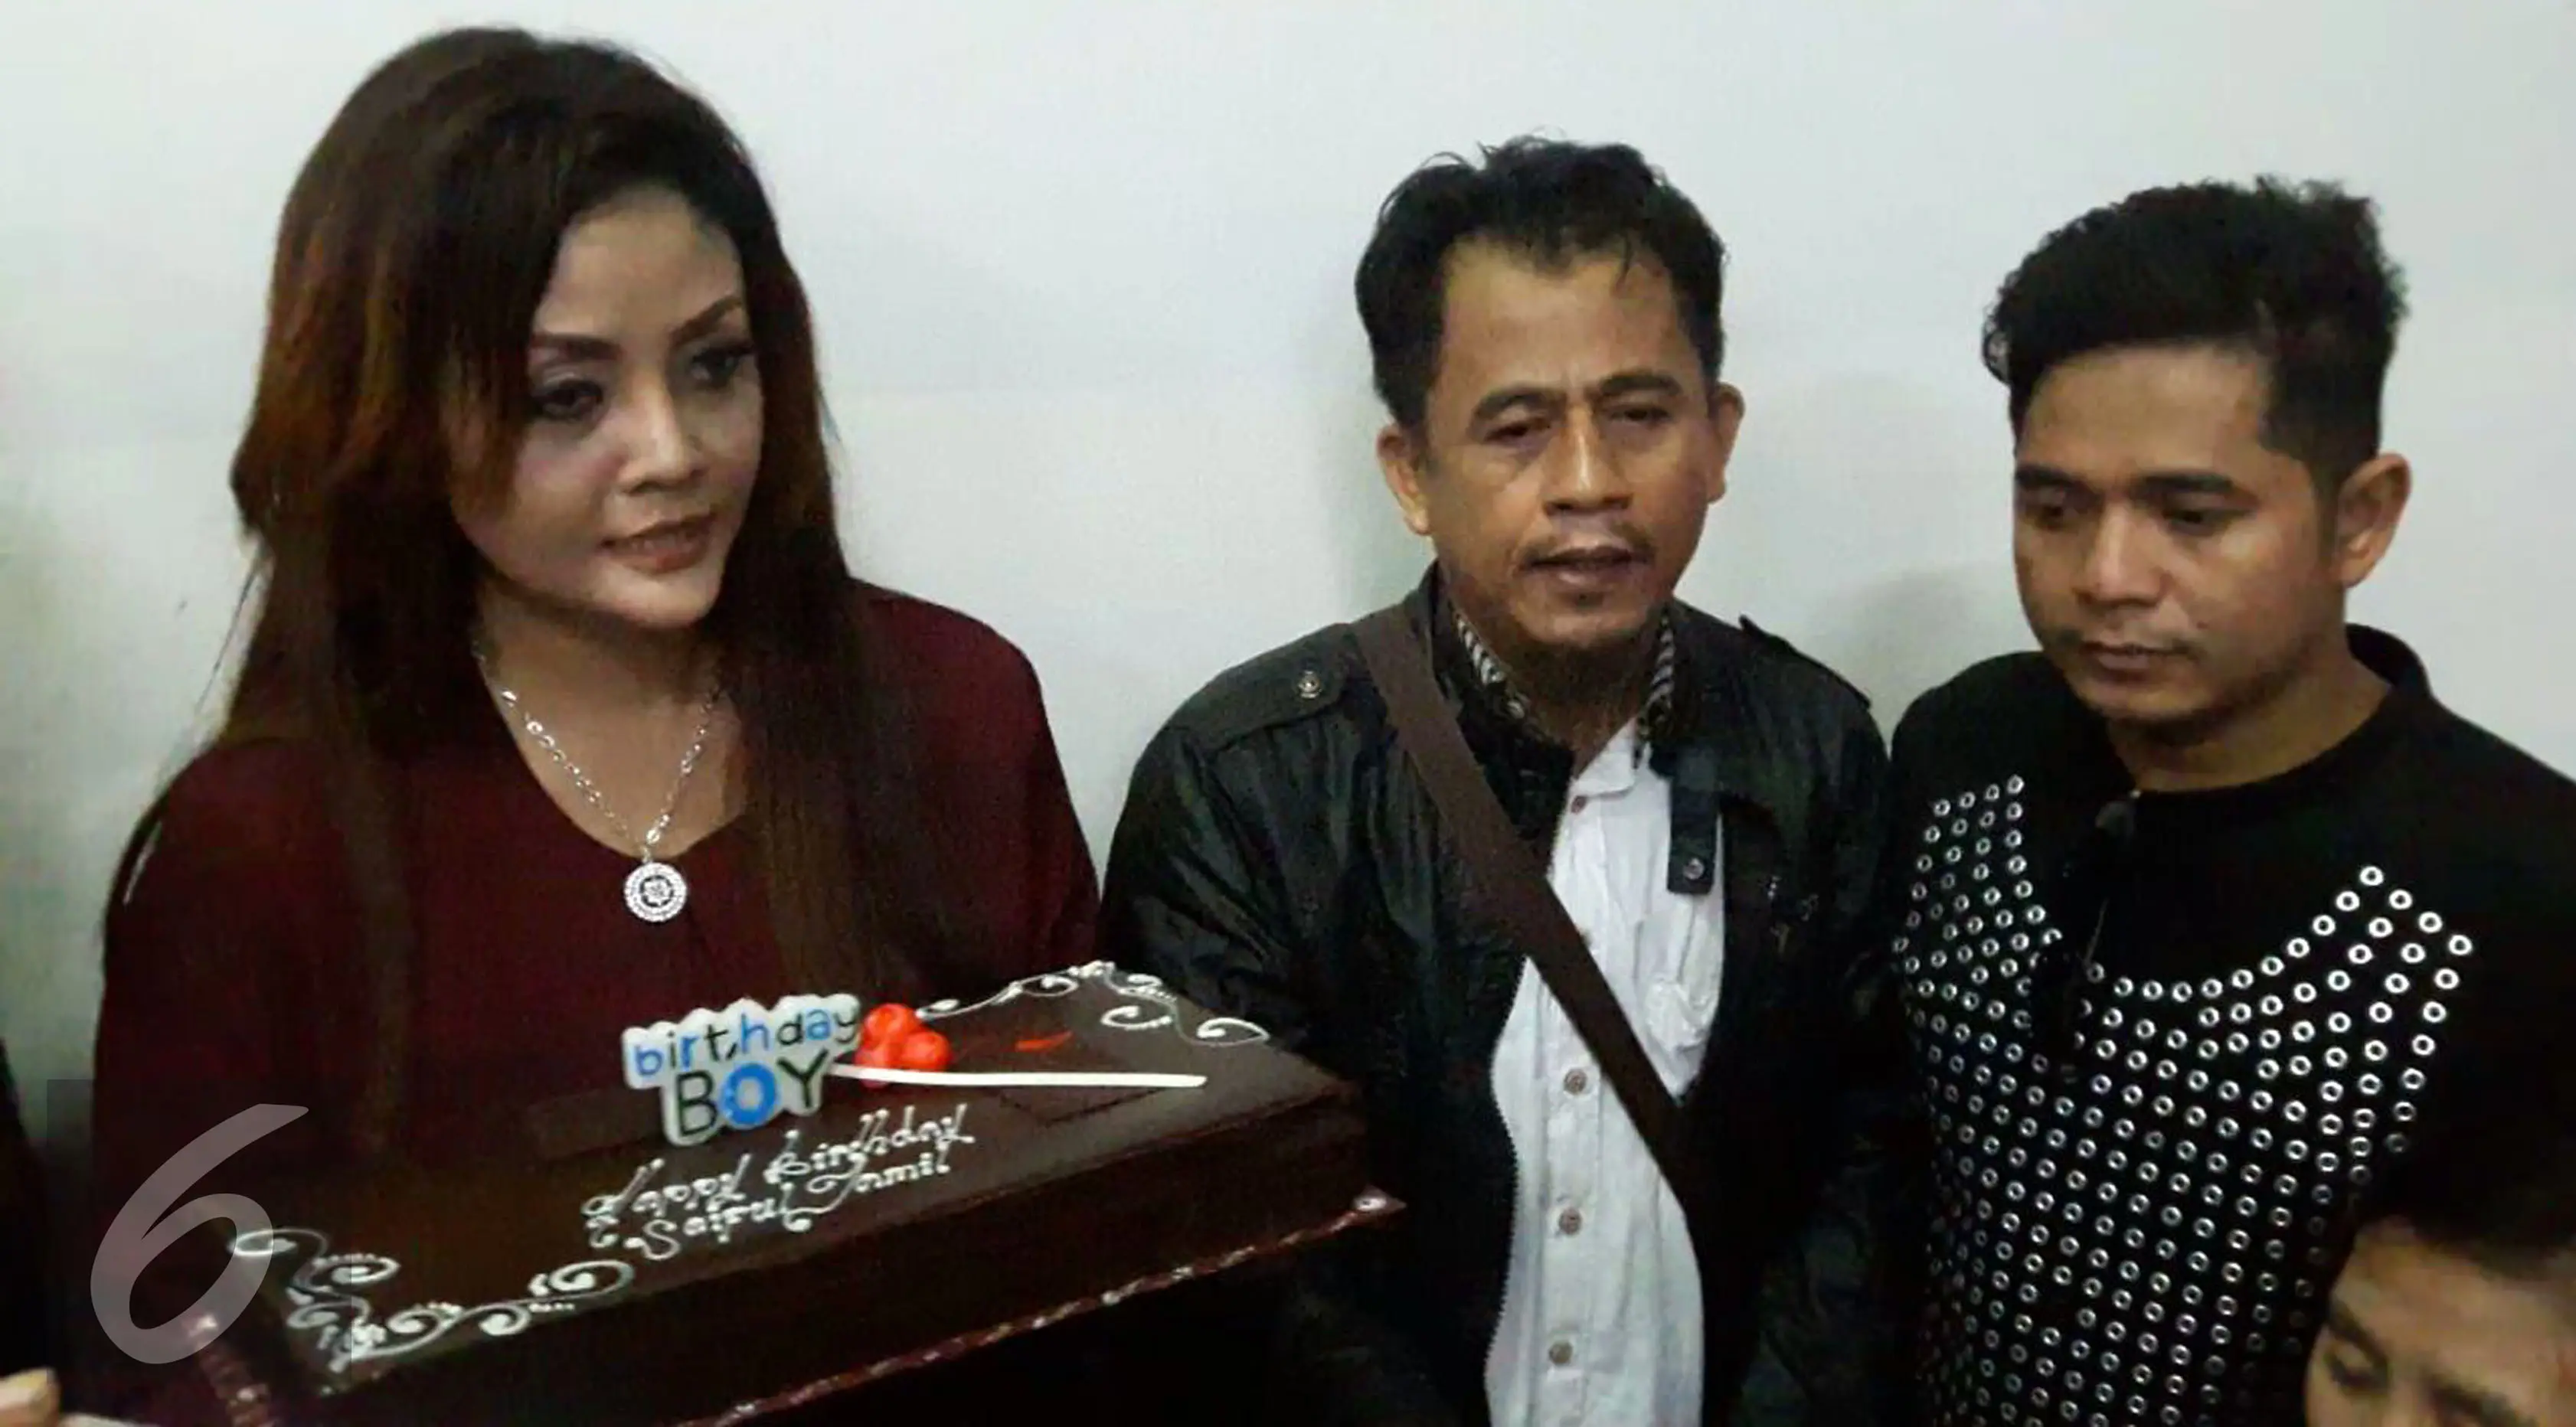 Citra Yunita membawakan kue ulang tahun untuk mantan kekasihnya, Saipul Jamil. (Sapto Purnomo/Liputan6.com)